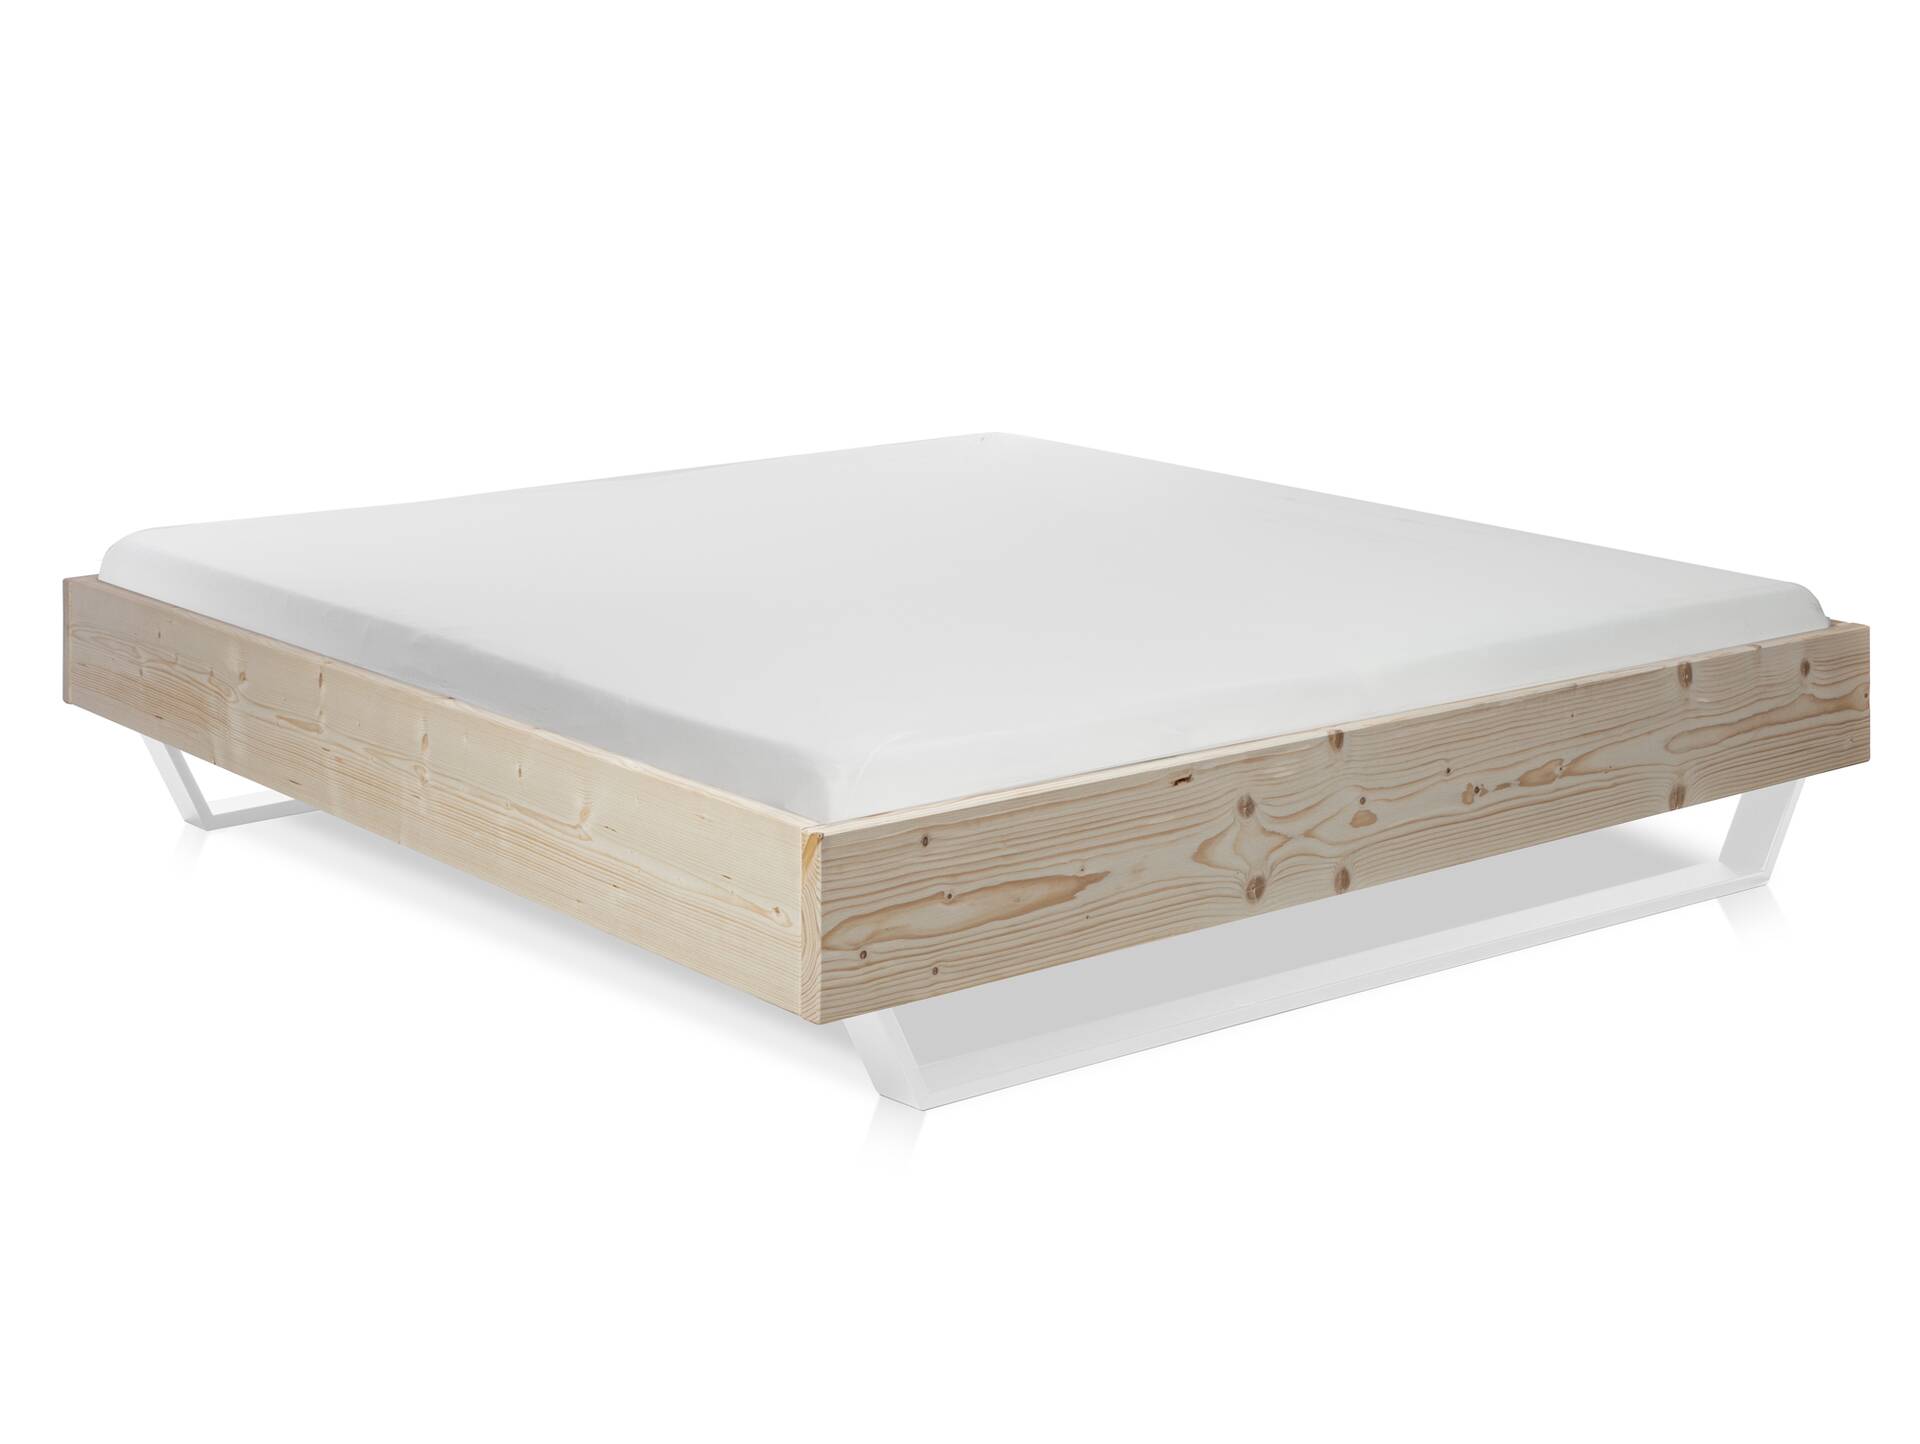 LUKY Kufenbett, Material Massivholz, Fichte massiv, Kufen weiß, mit/ohne Kopfteil 90 x 200 cm | natur | ohne Kopfteil